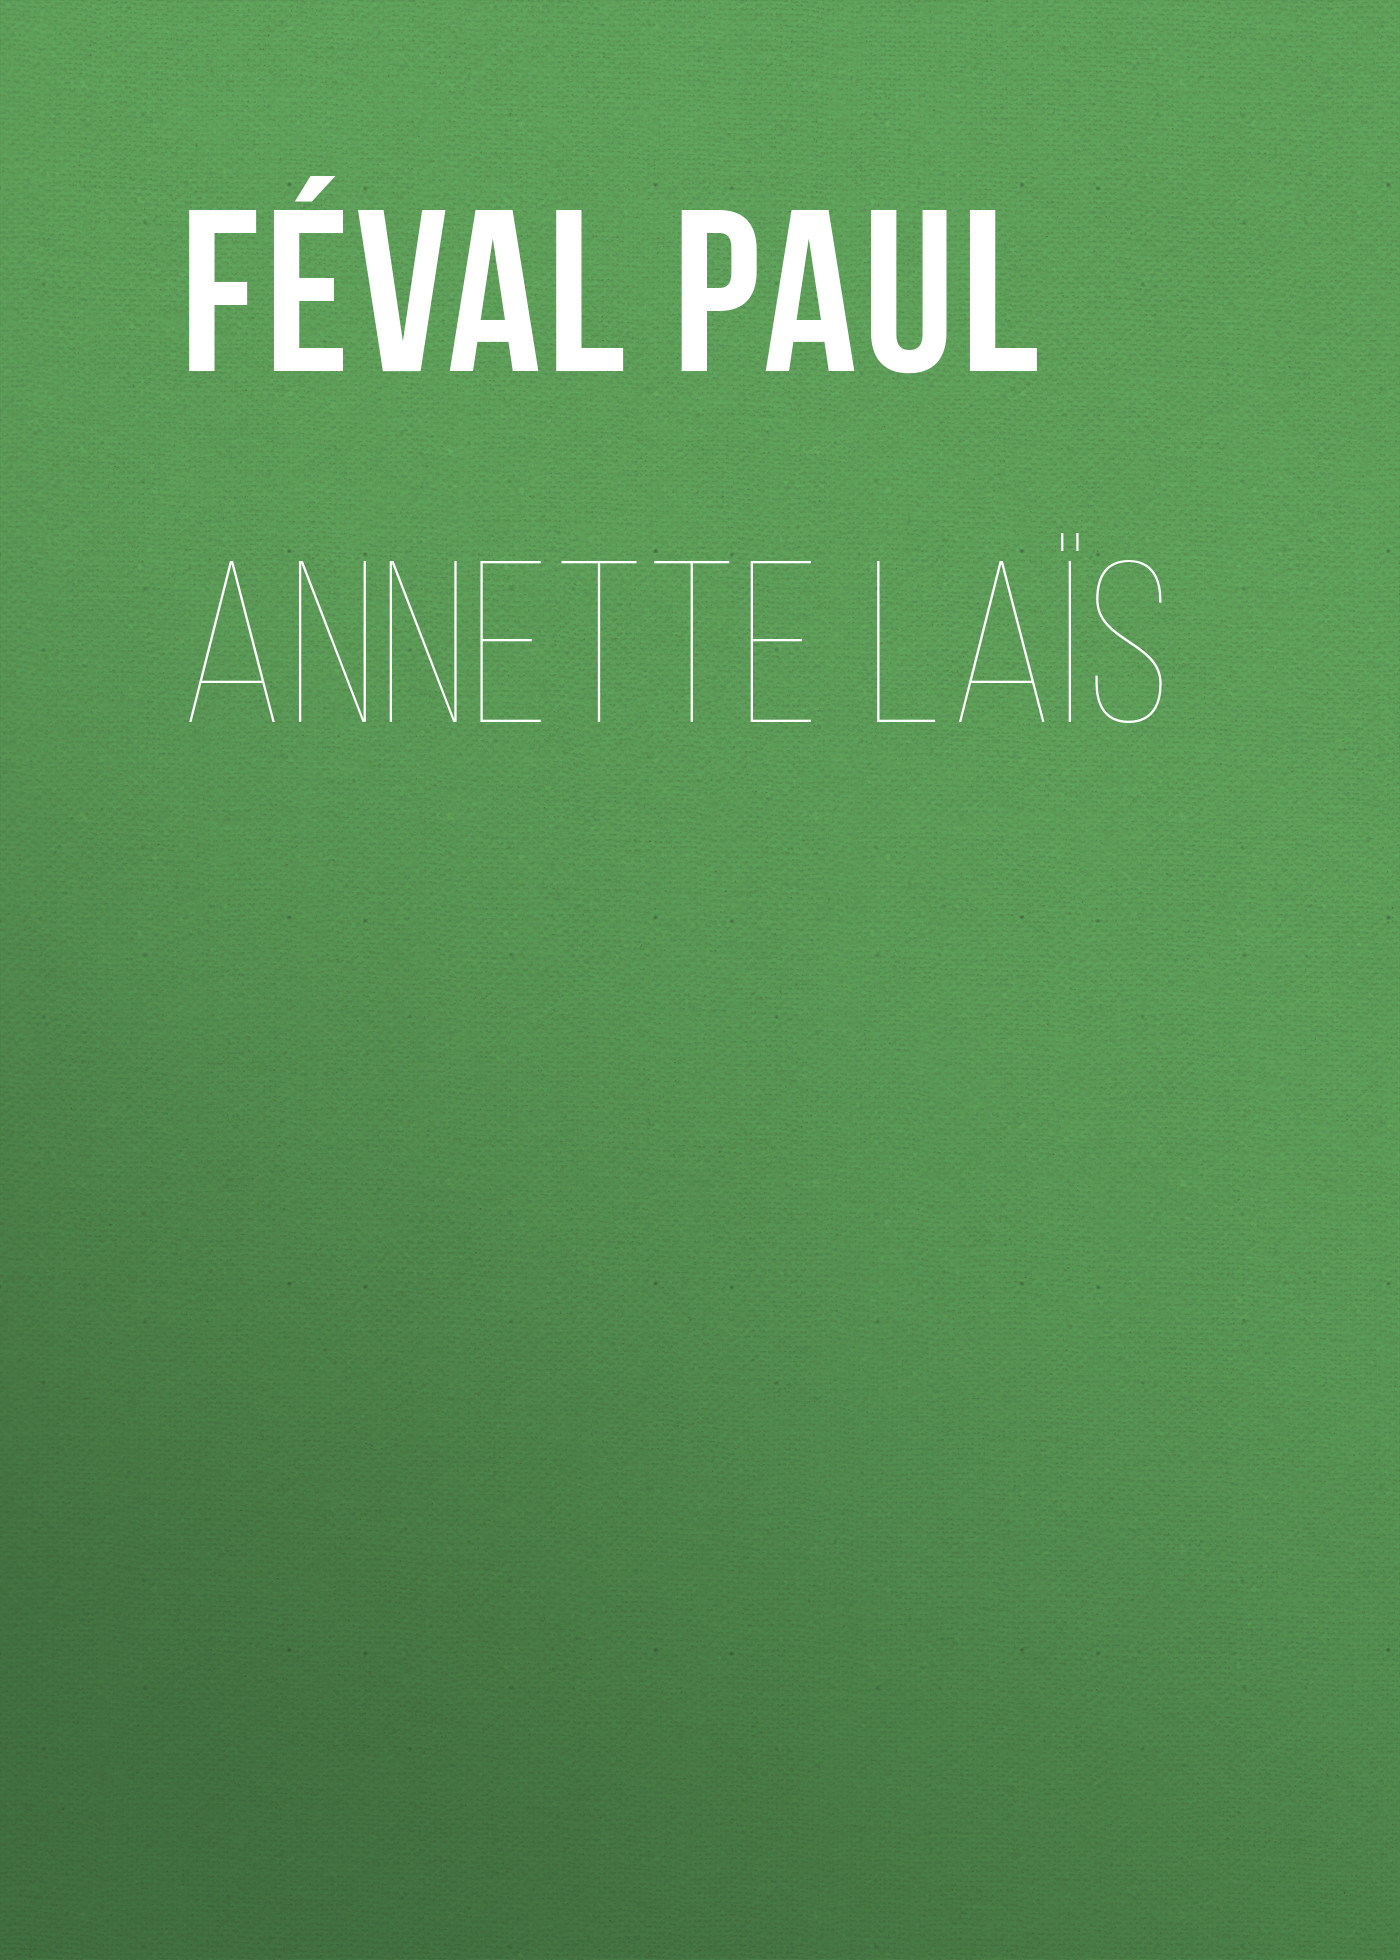 Книга Annette Laïs из серии , созданная Paul Féval, может относится к жанру Зарубежная старинная литература, Зарубежная классика. Стоимость электронной книги Annette Laïs с идентификатором 24728121 составляет 0 руб.